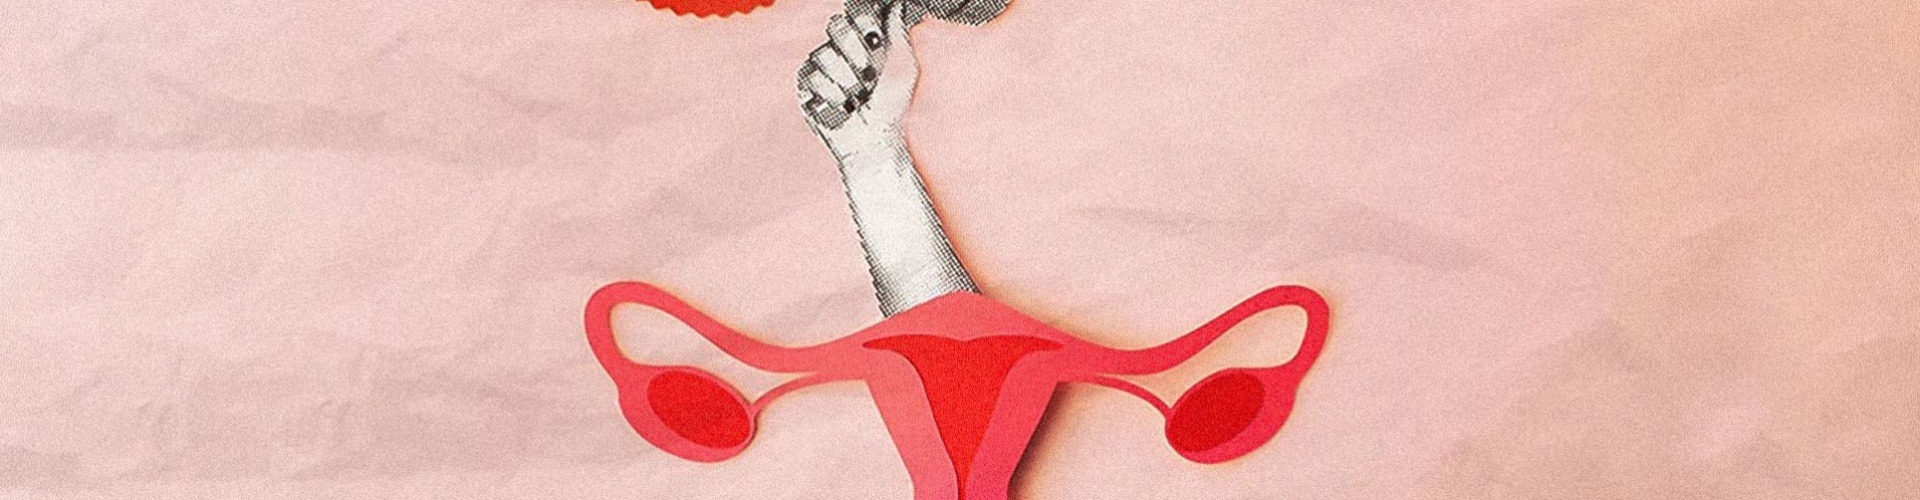 Még mindig ismeretlen az endometriózis!